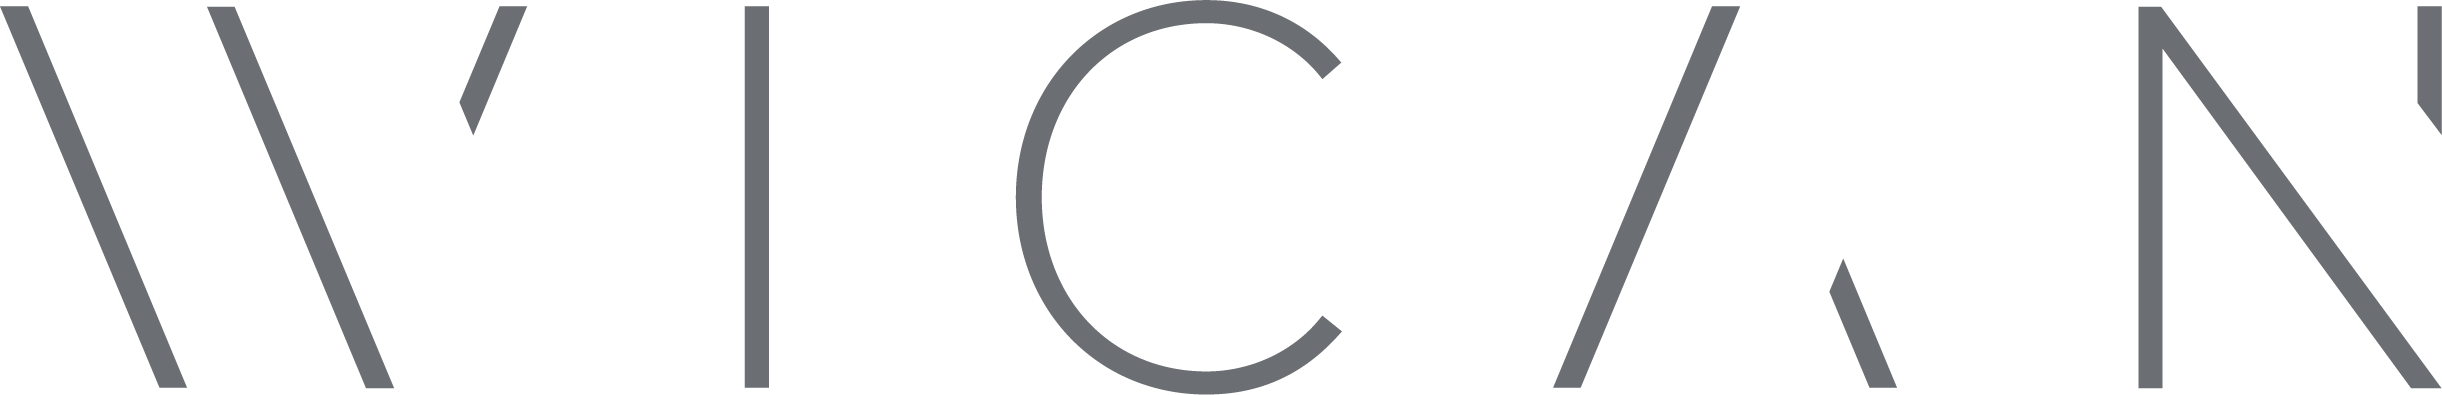 wican logo med grå tekst